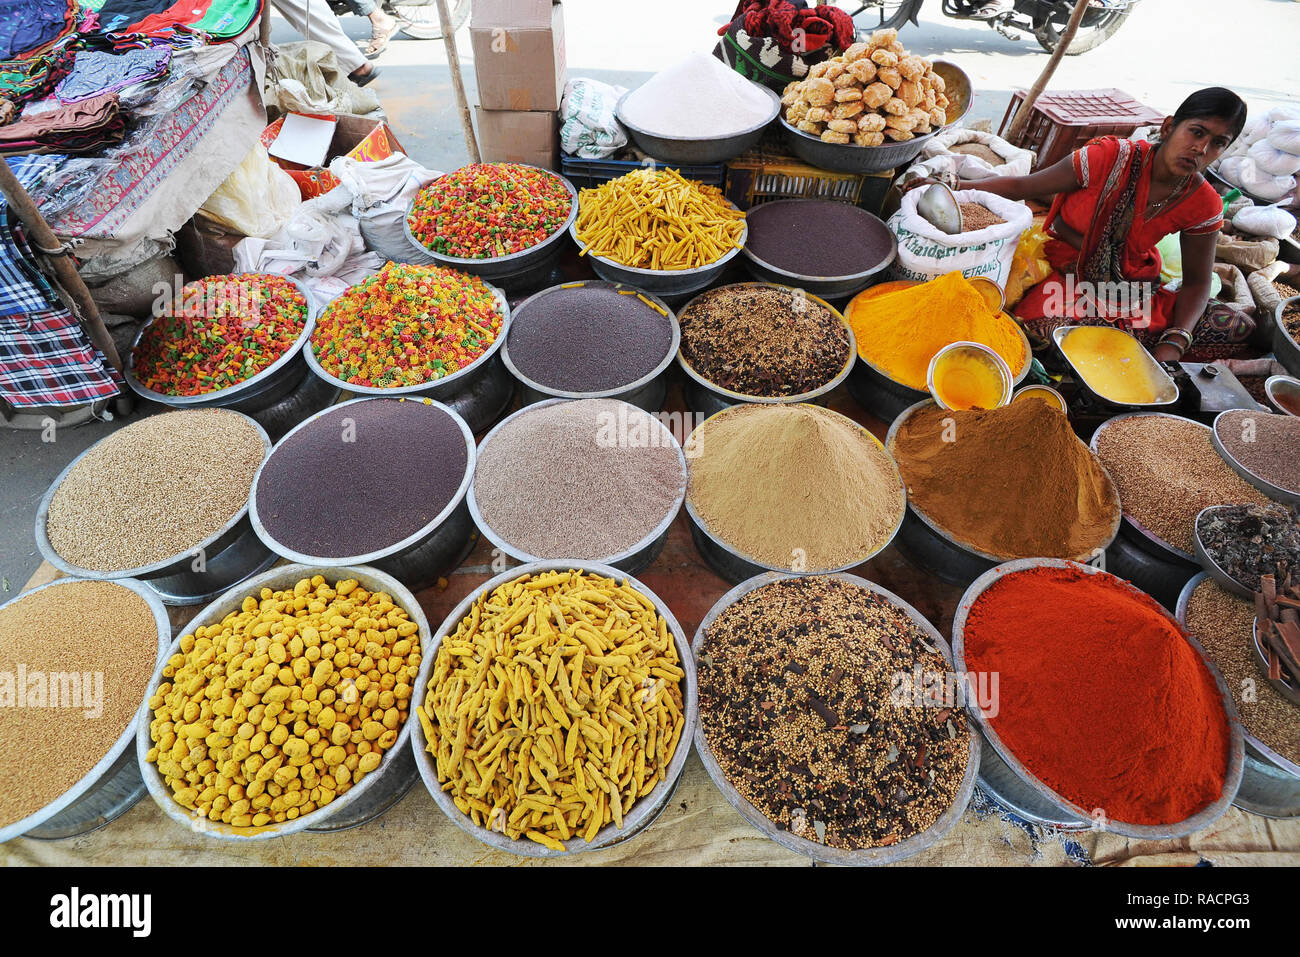 Frau in rot Sari im Dorf Straße Marktstand verkaufen Gewürze, Samen und Pasta, chhota Bazna, Gujarat, Indien, Asien Stockfoto